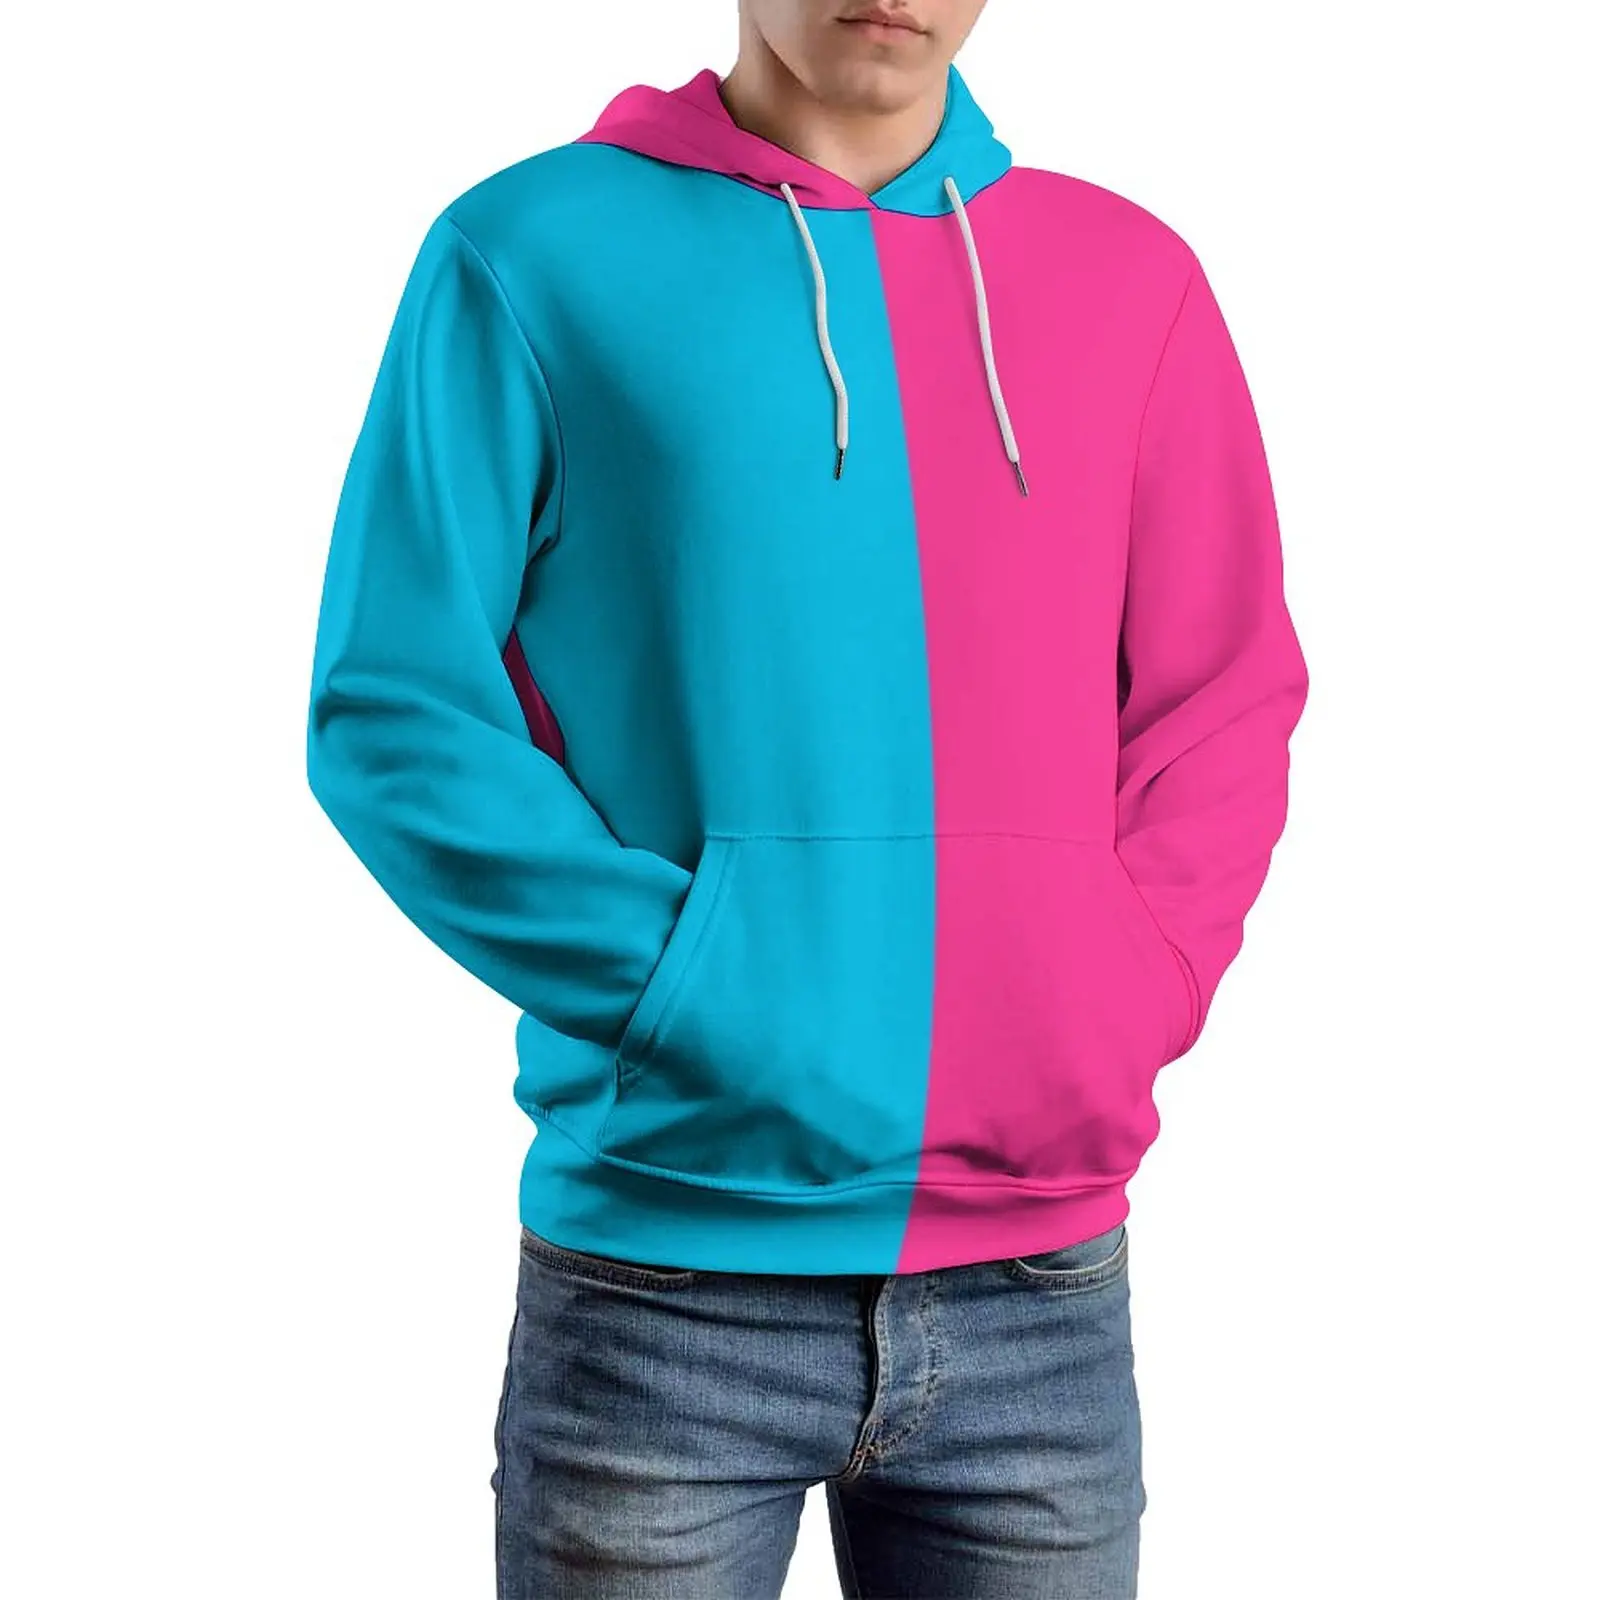 

Colorblock Print Casual Hoodies Men Two Tone Aesthetic Design Hooded Sweatshirts Spring Long Sleeve Street Wear Oversized Hoodie